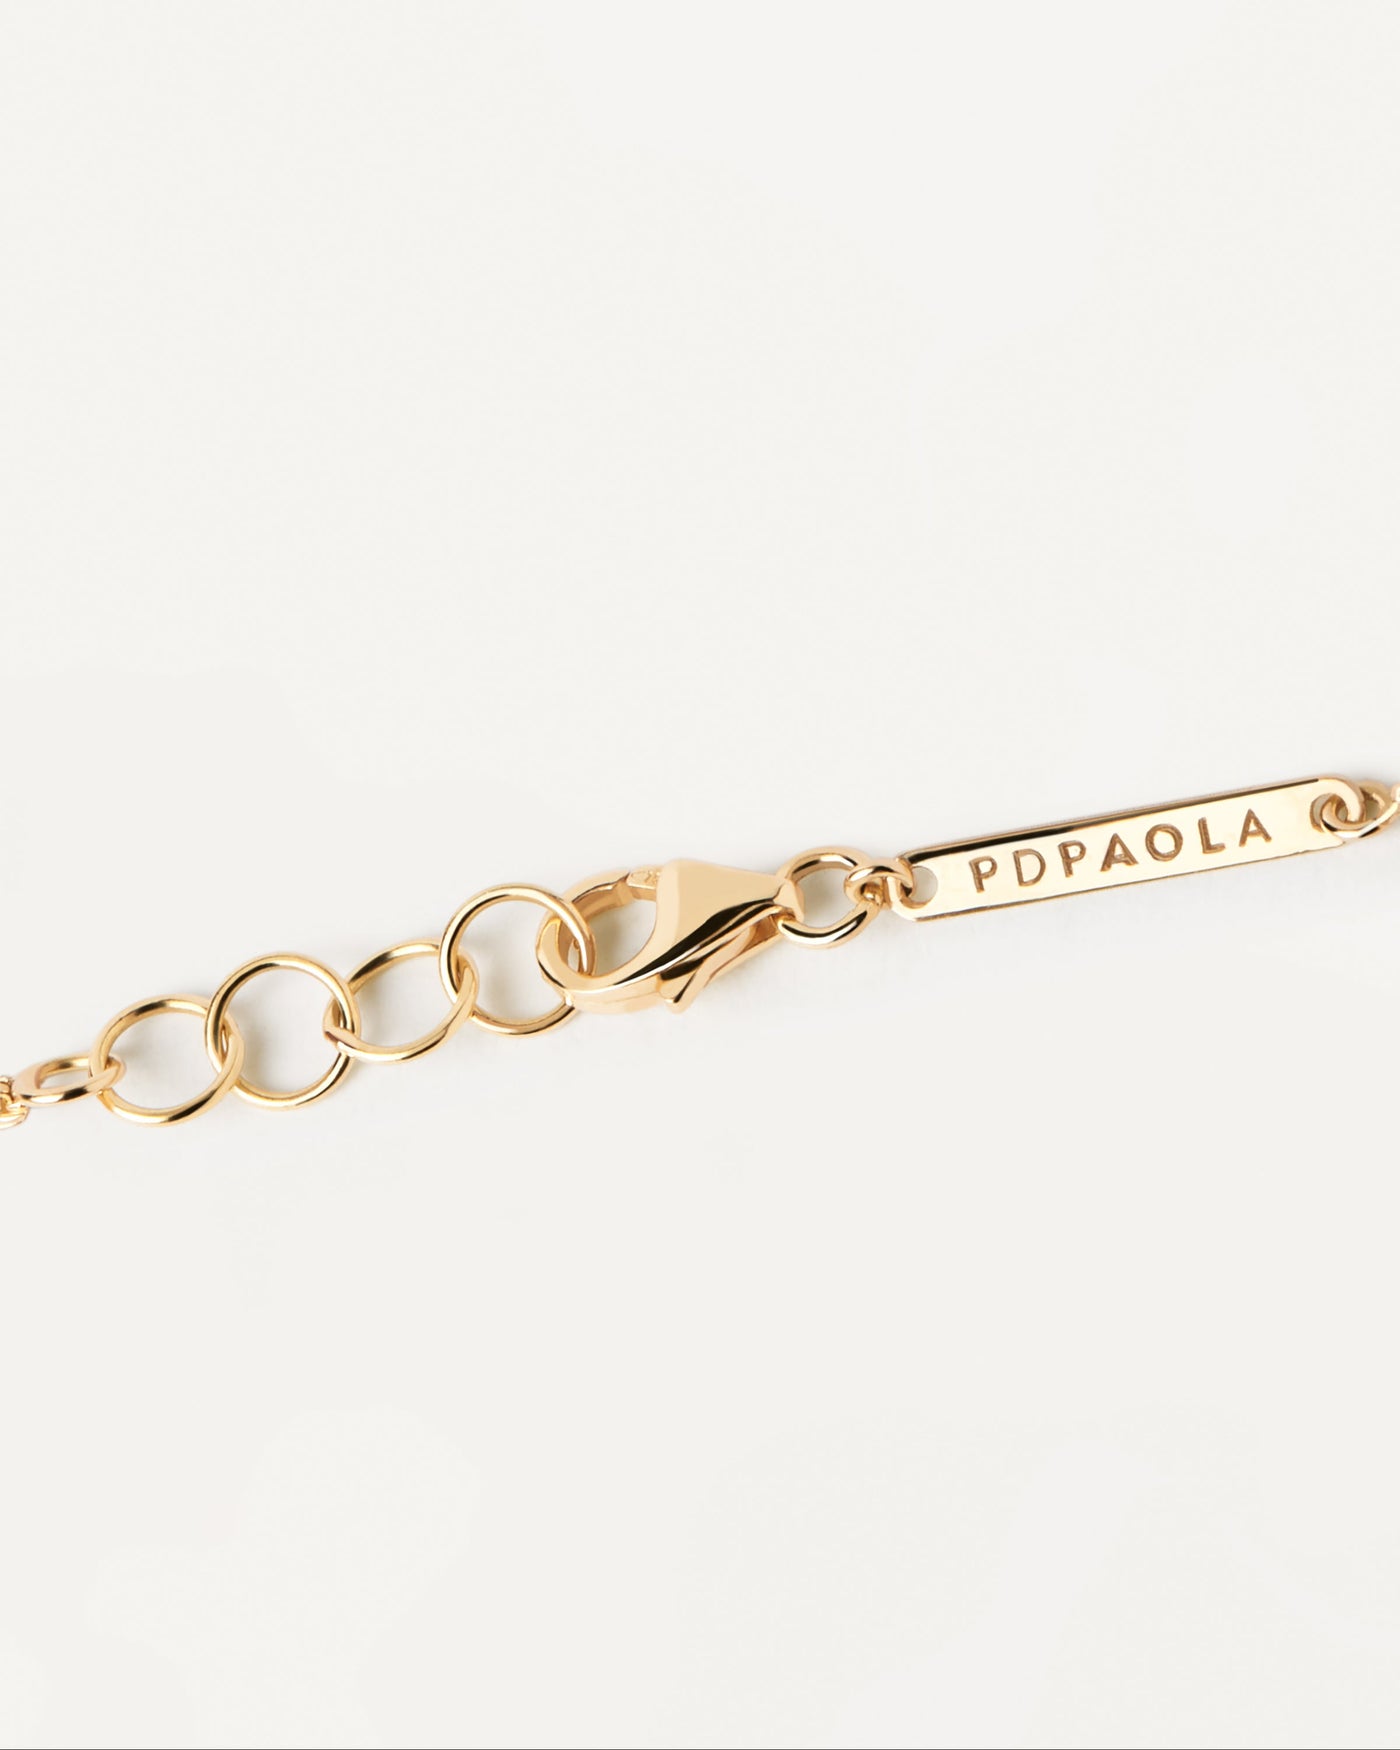 Chain Fine jewelry bracelets